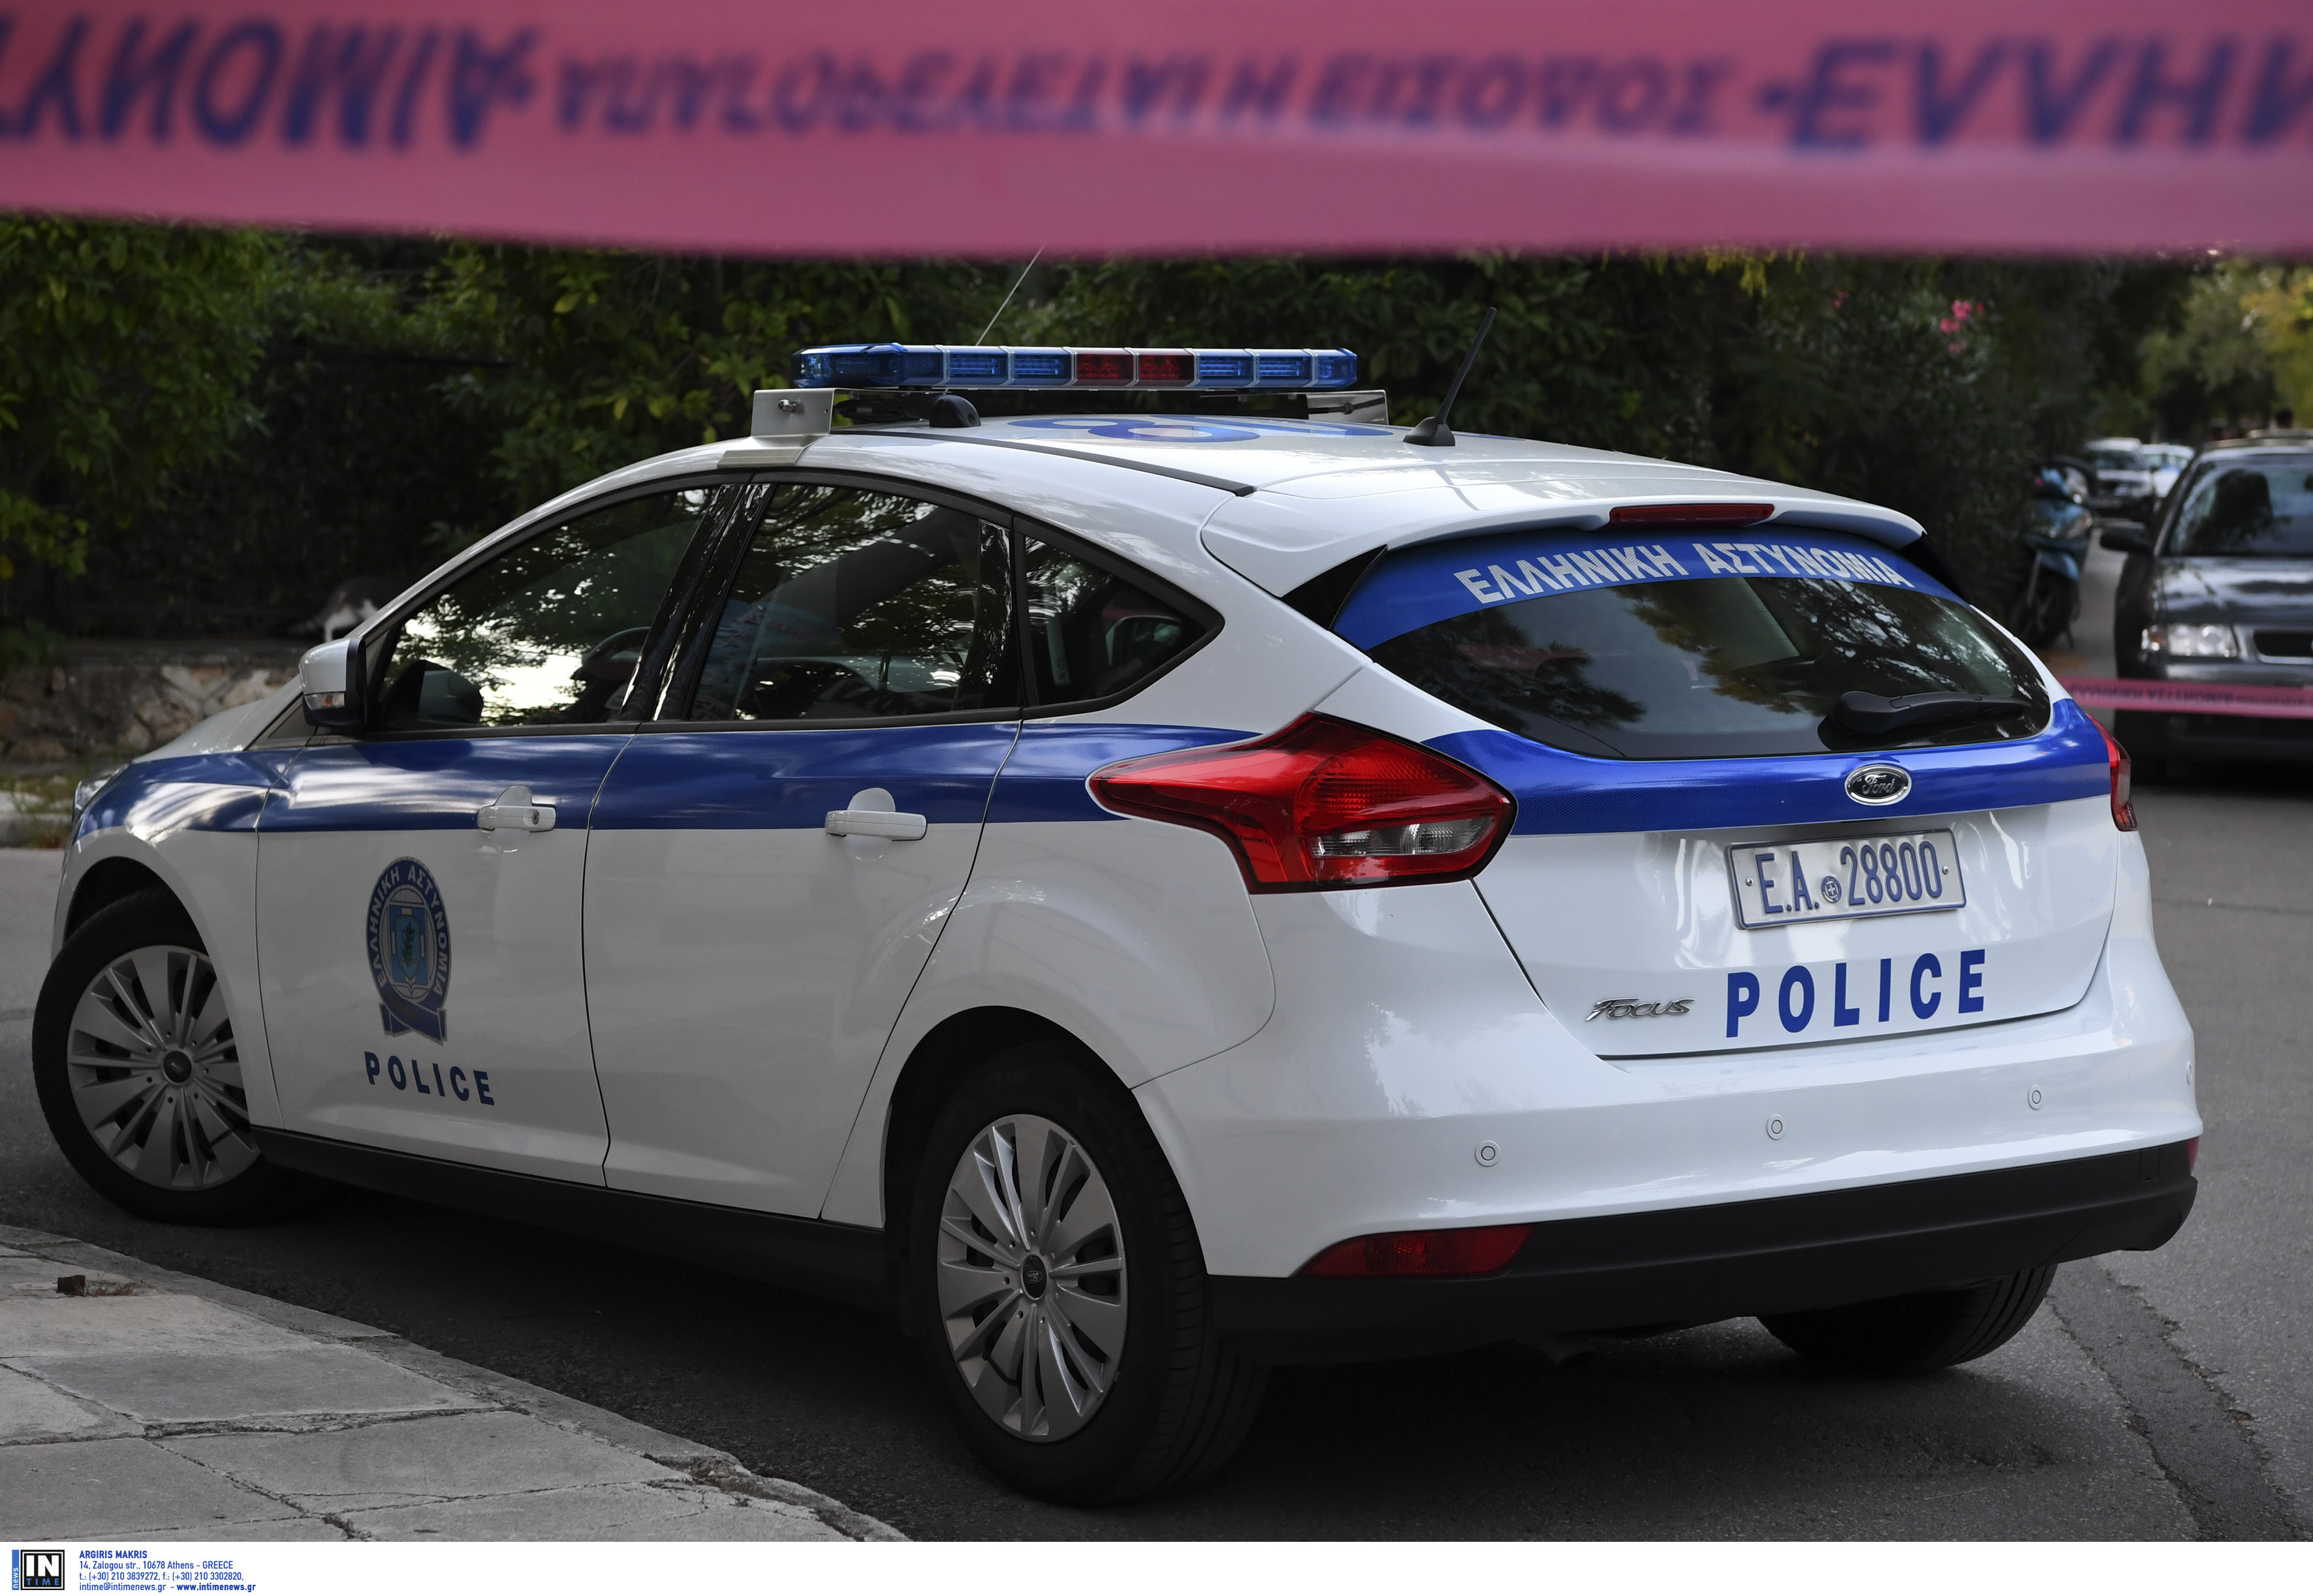 Θεσσαλονίκη: Ανάληψη ευθύνης για τον εκρηκτικό μηχανισμό στο σπίτι του προξένου της Χιλής!